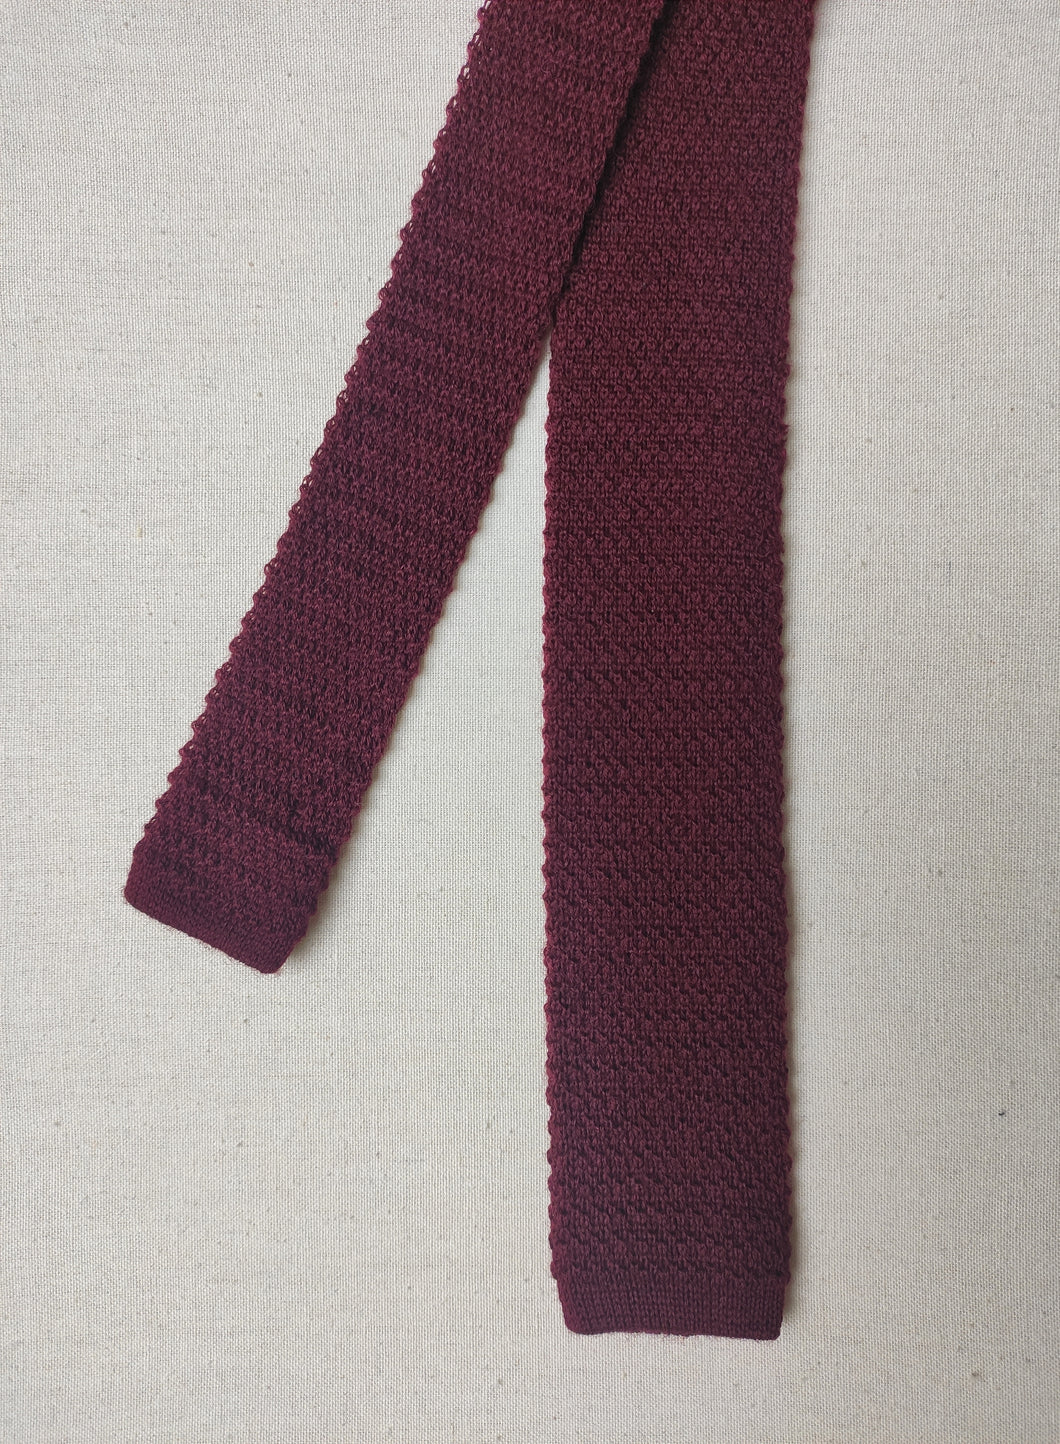 Cravate tricot vintage bordeaux 100% laine